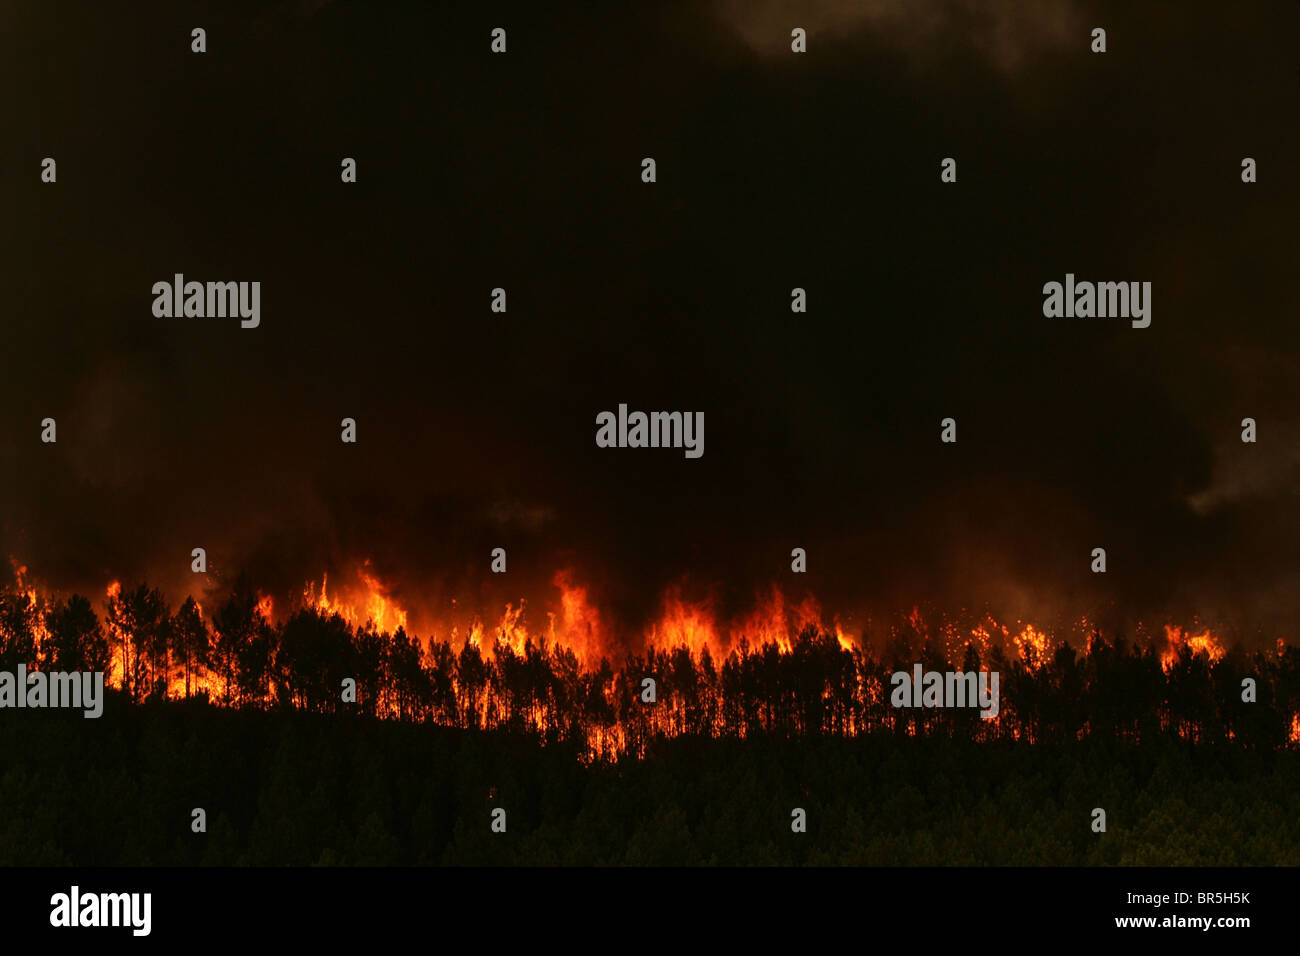 Un incendie fait rage dans une forêt Banque D'Images